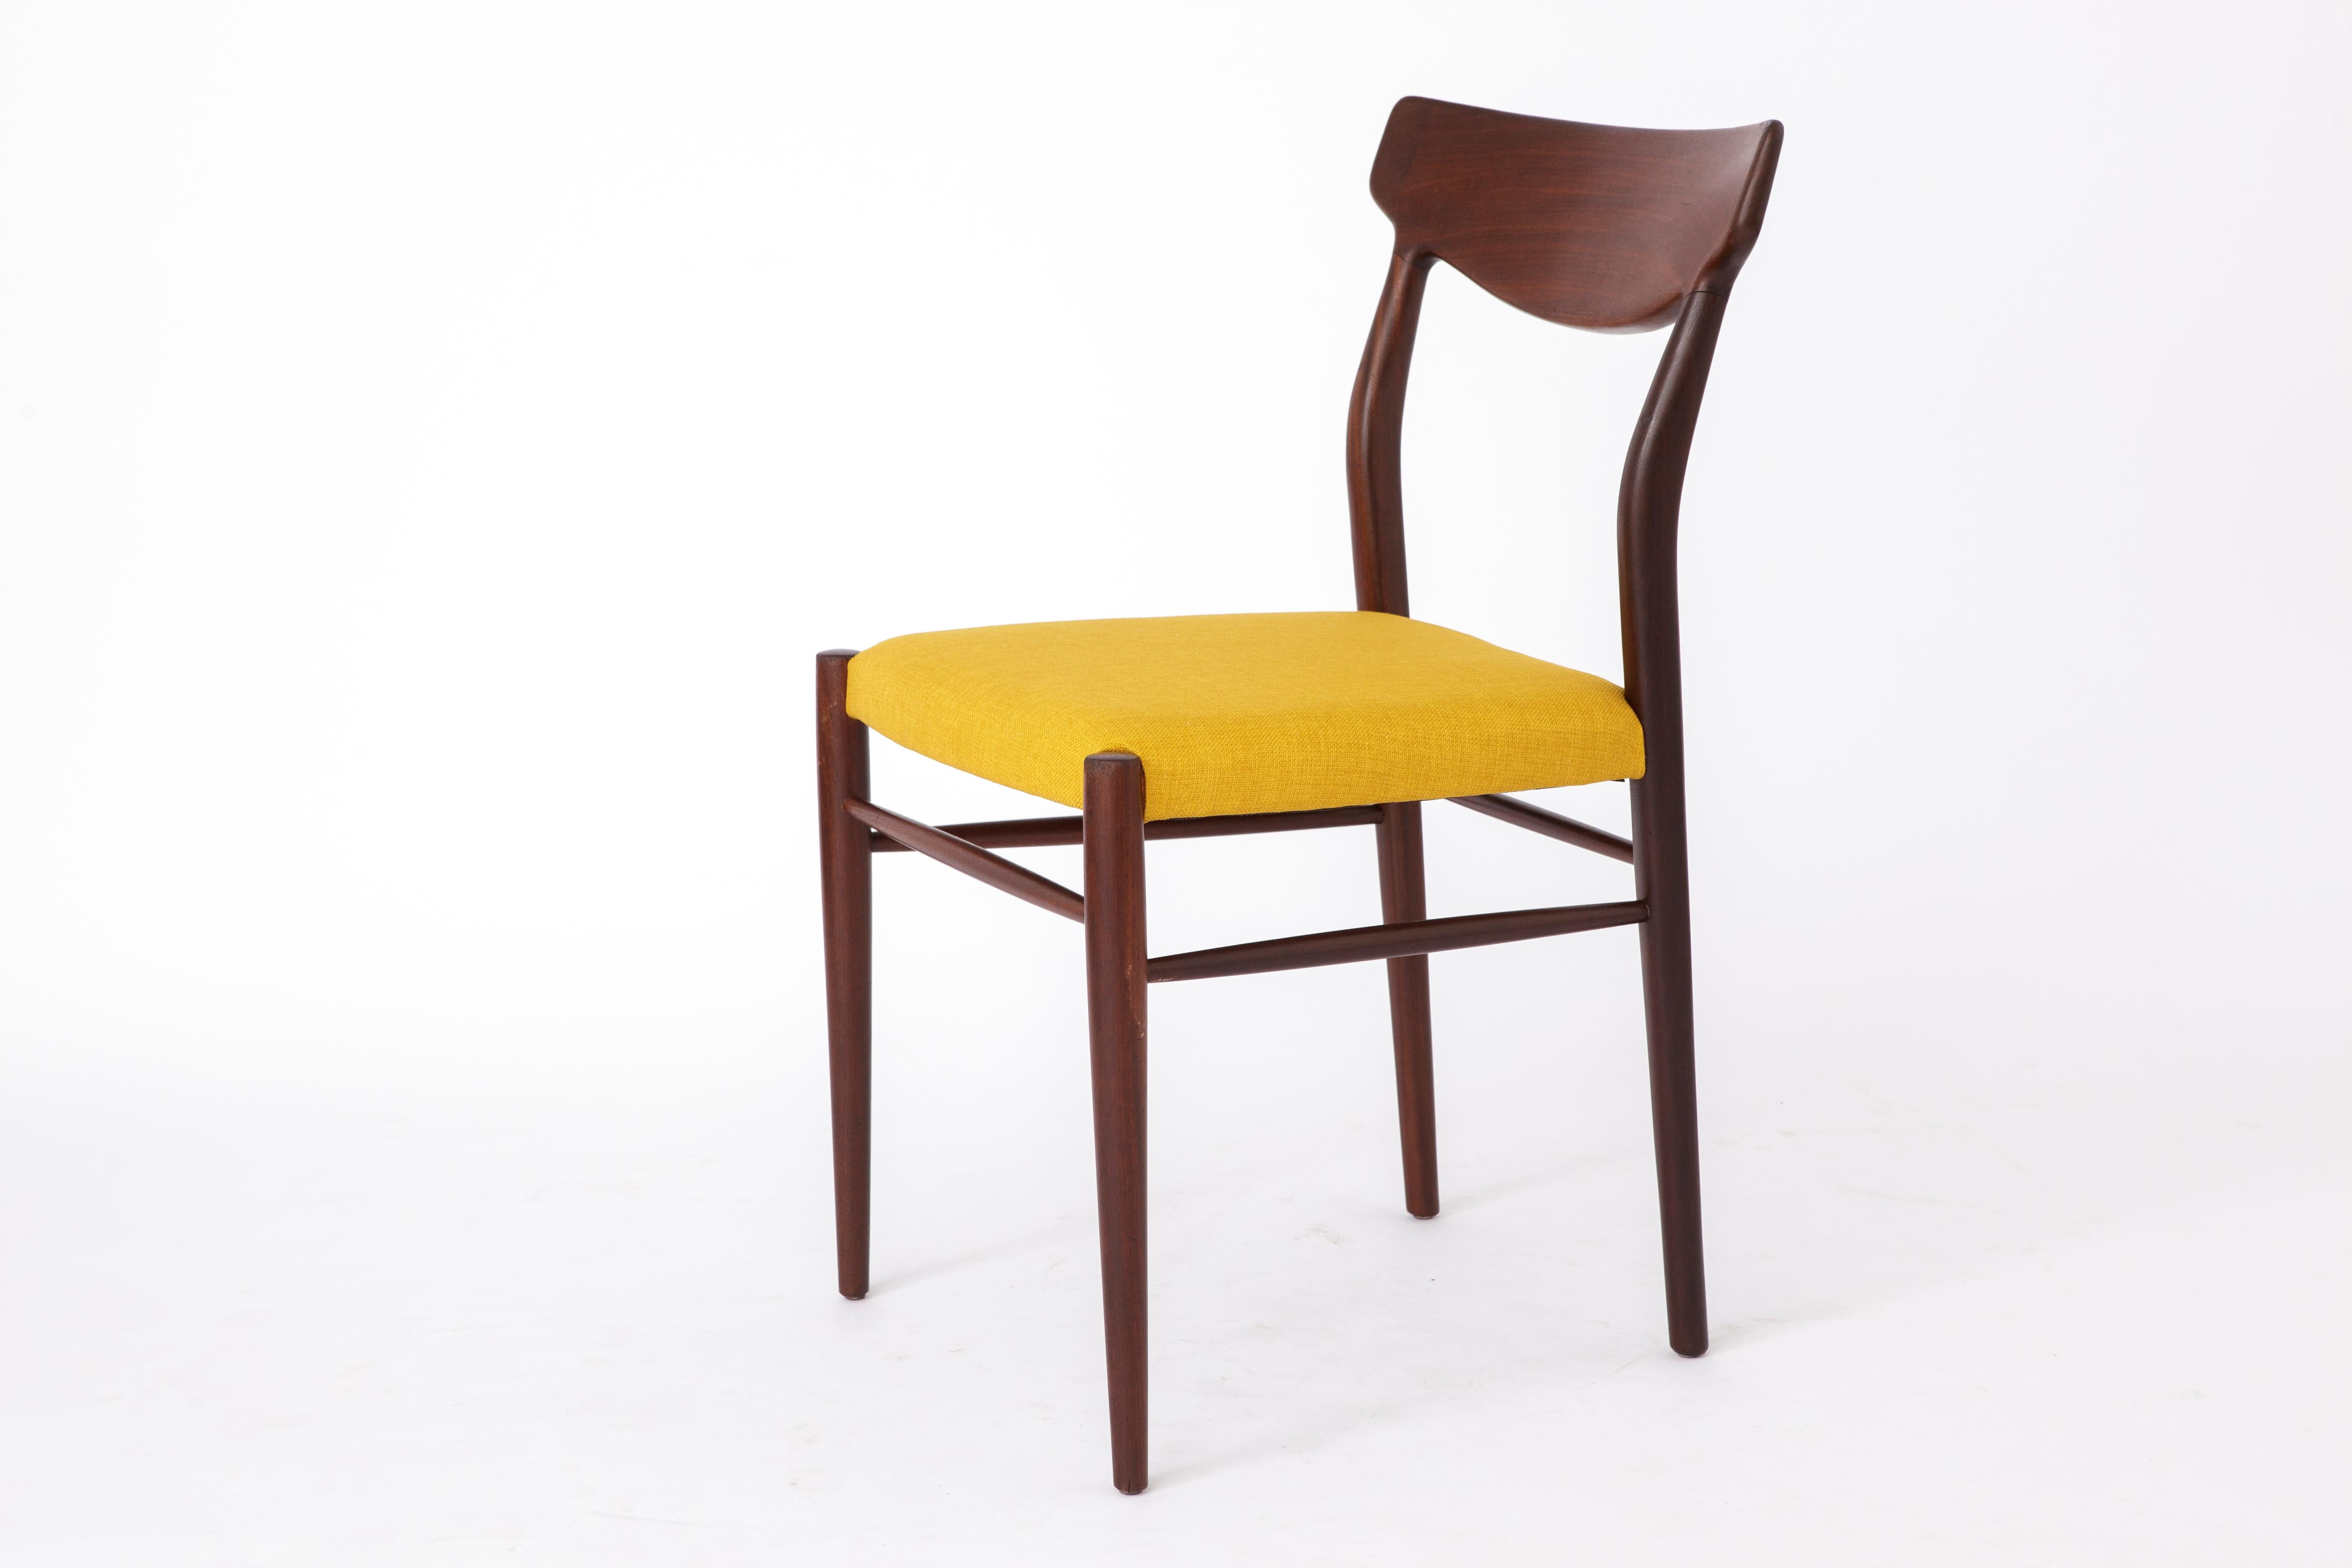 German Midcentury Teak Desk Chair Lübke 1960s Vintage For Sale